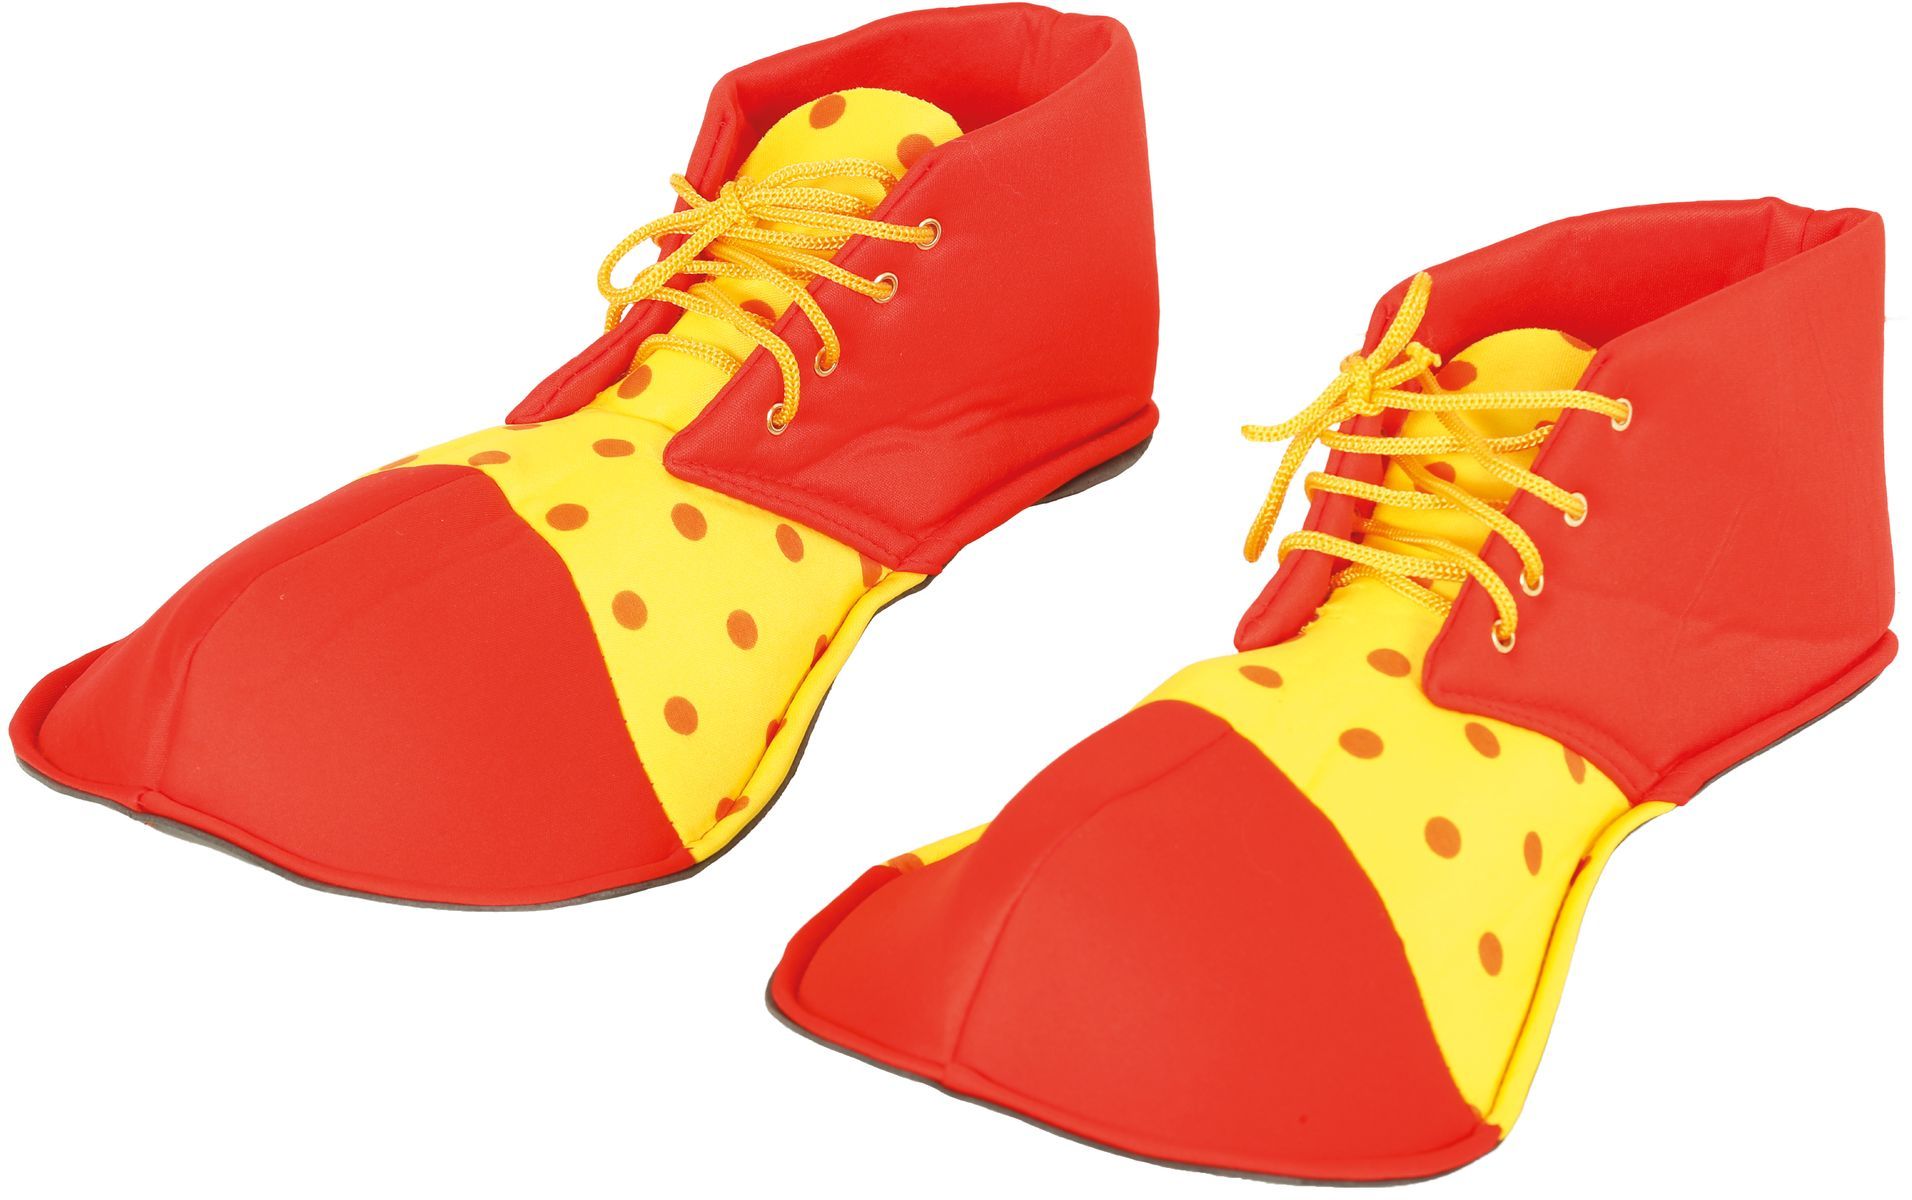 Grote clown schoenen rood